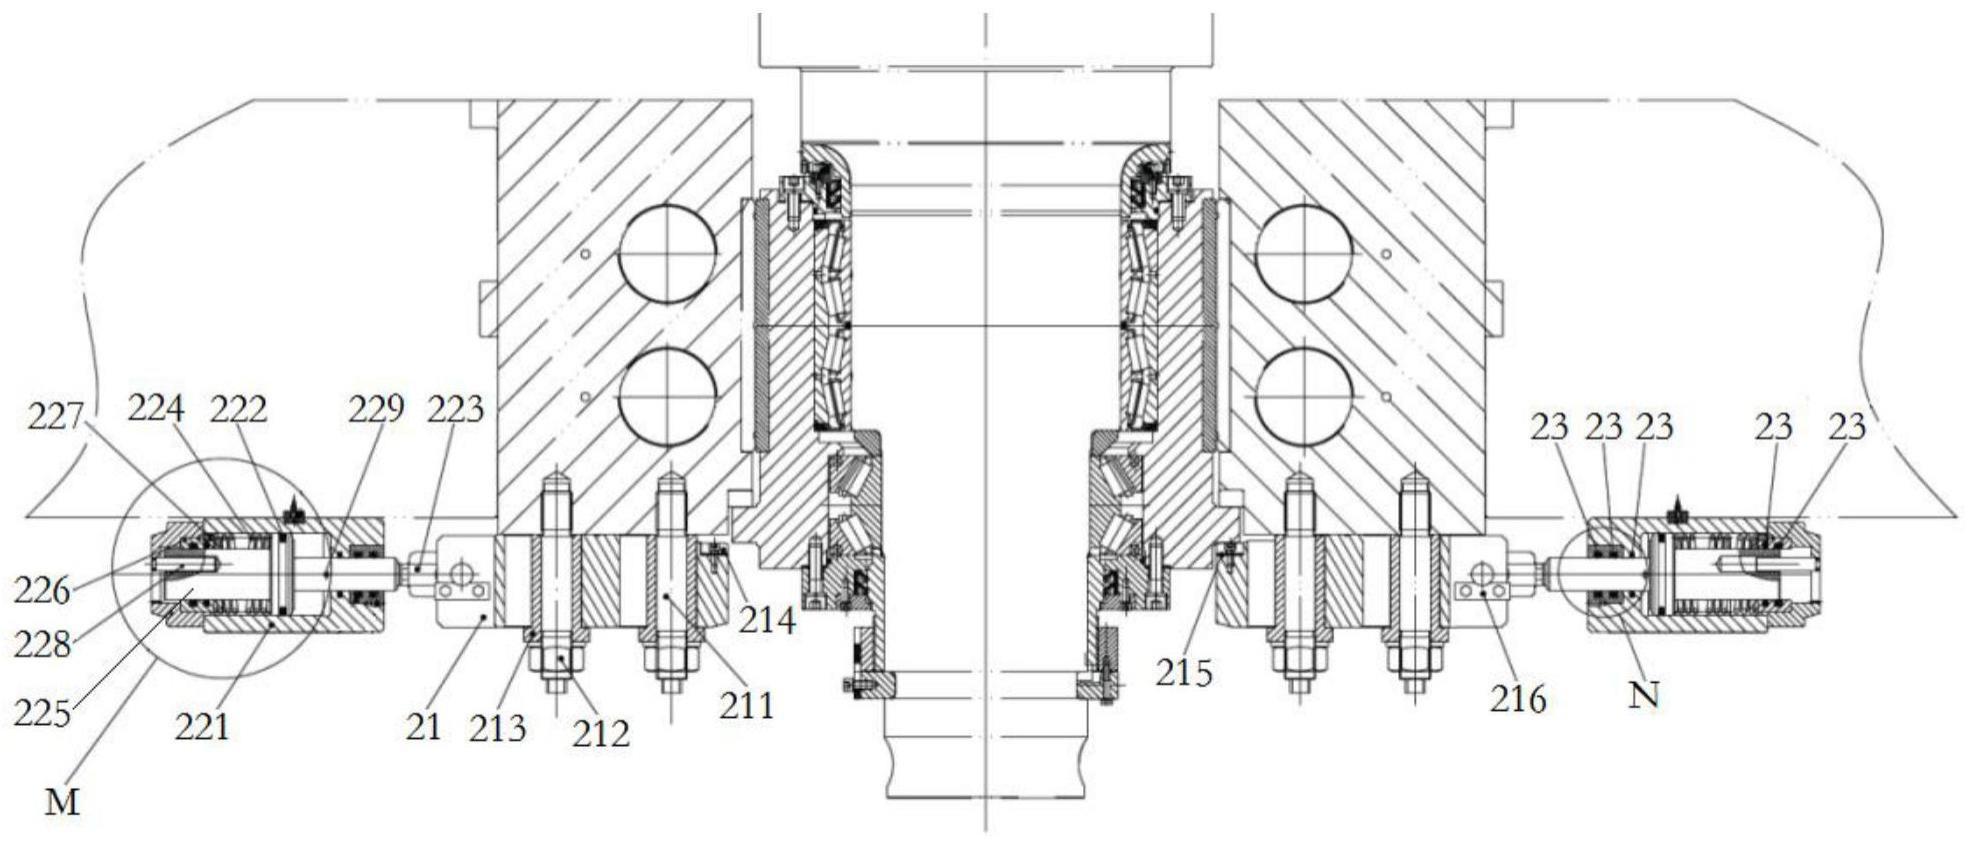 轧机、轧机工作辊轴向防窜装置、防窜结构及其应用方法与流程